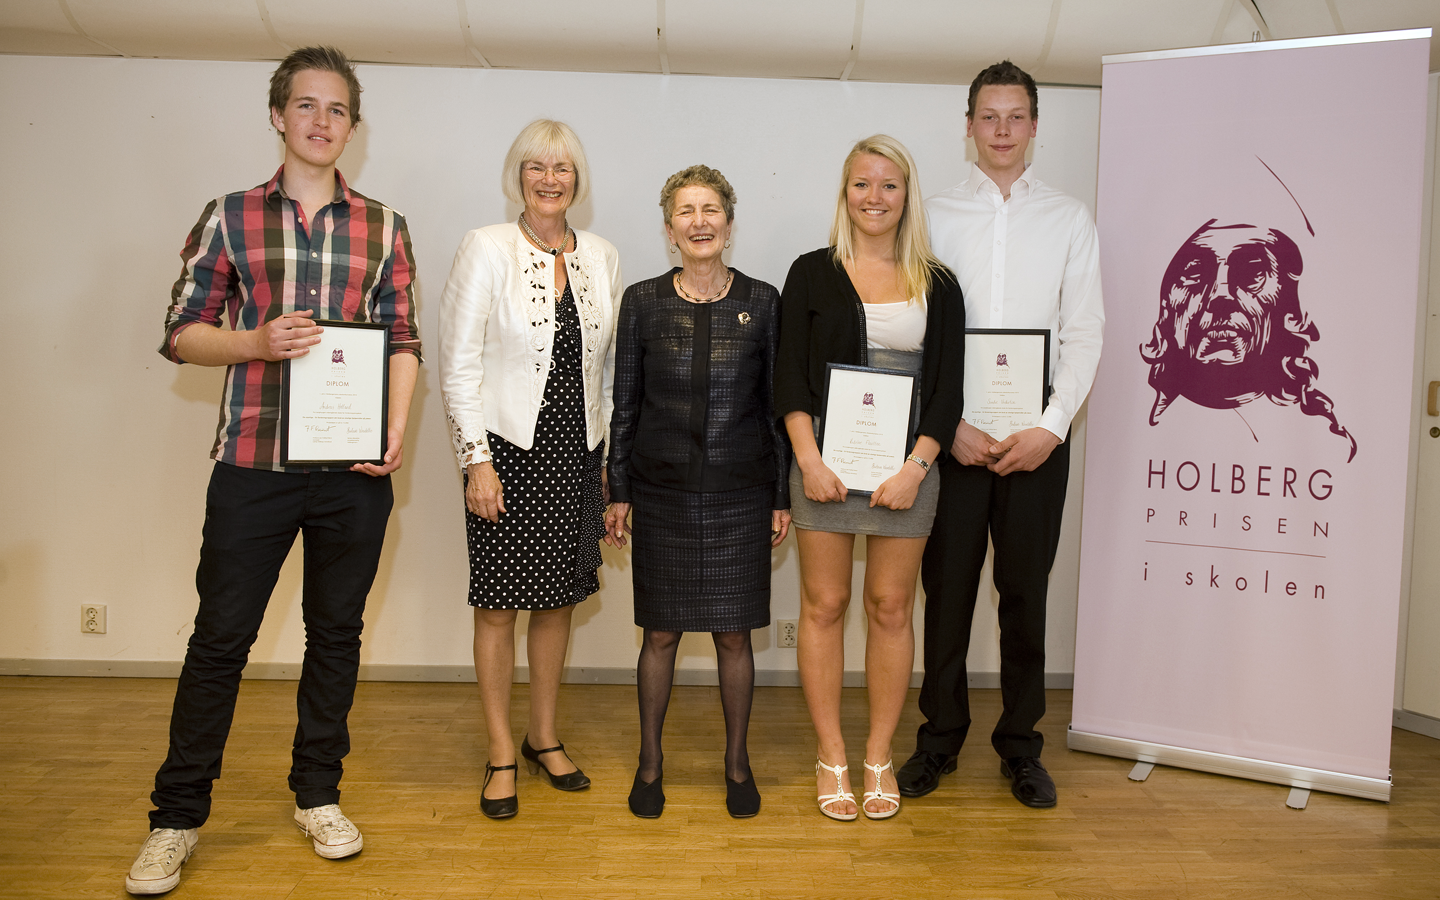 Førsteprisvinnere av Holbergprisen i skolen 2010. Foto: Marit Hommedal / Scanxpix